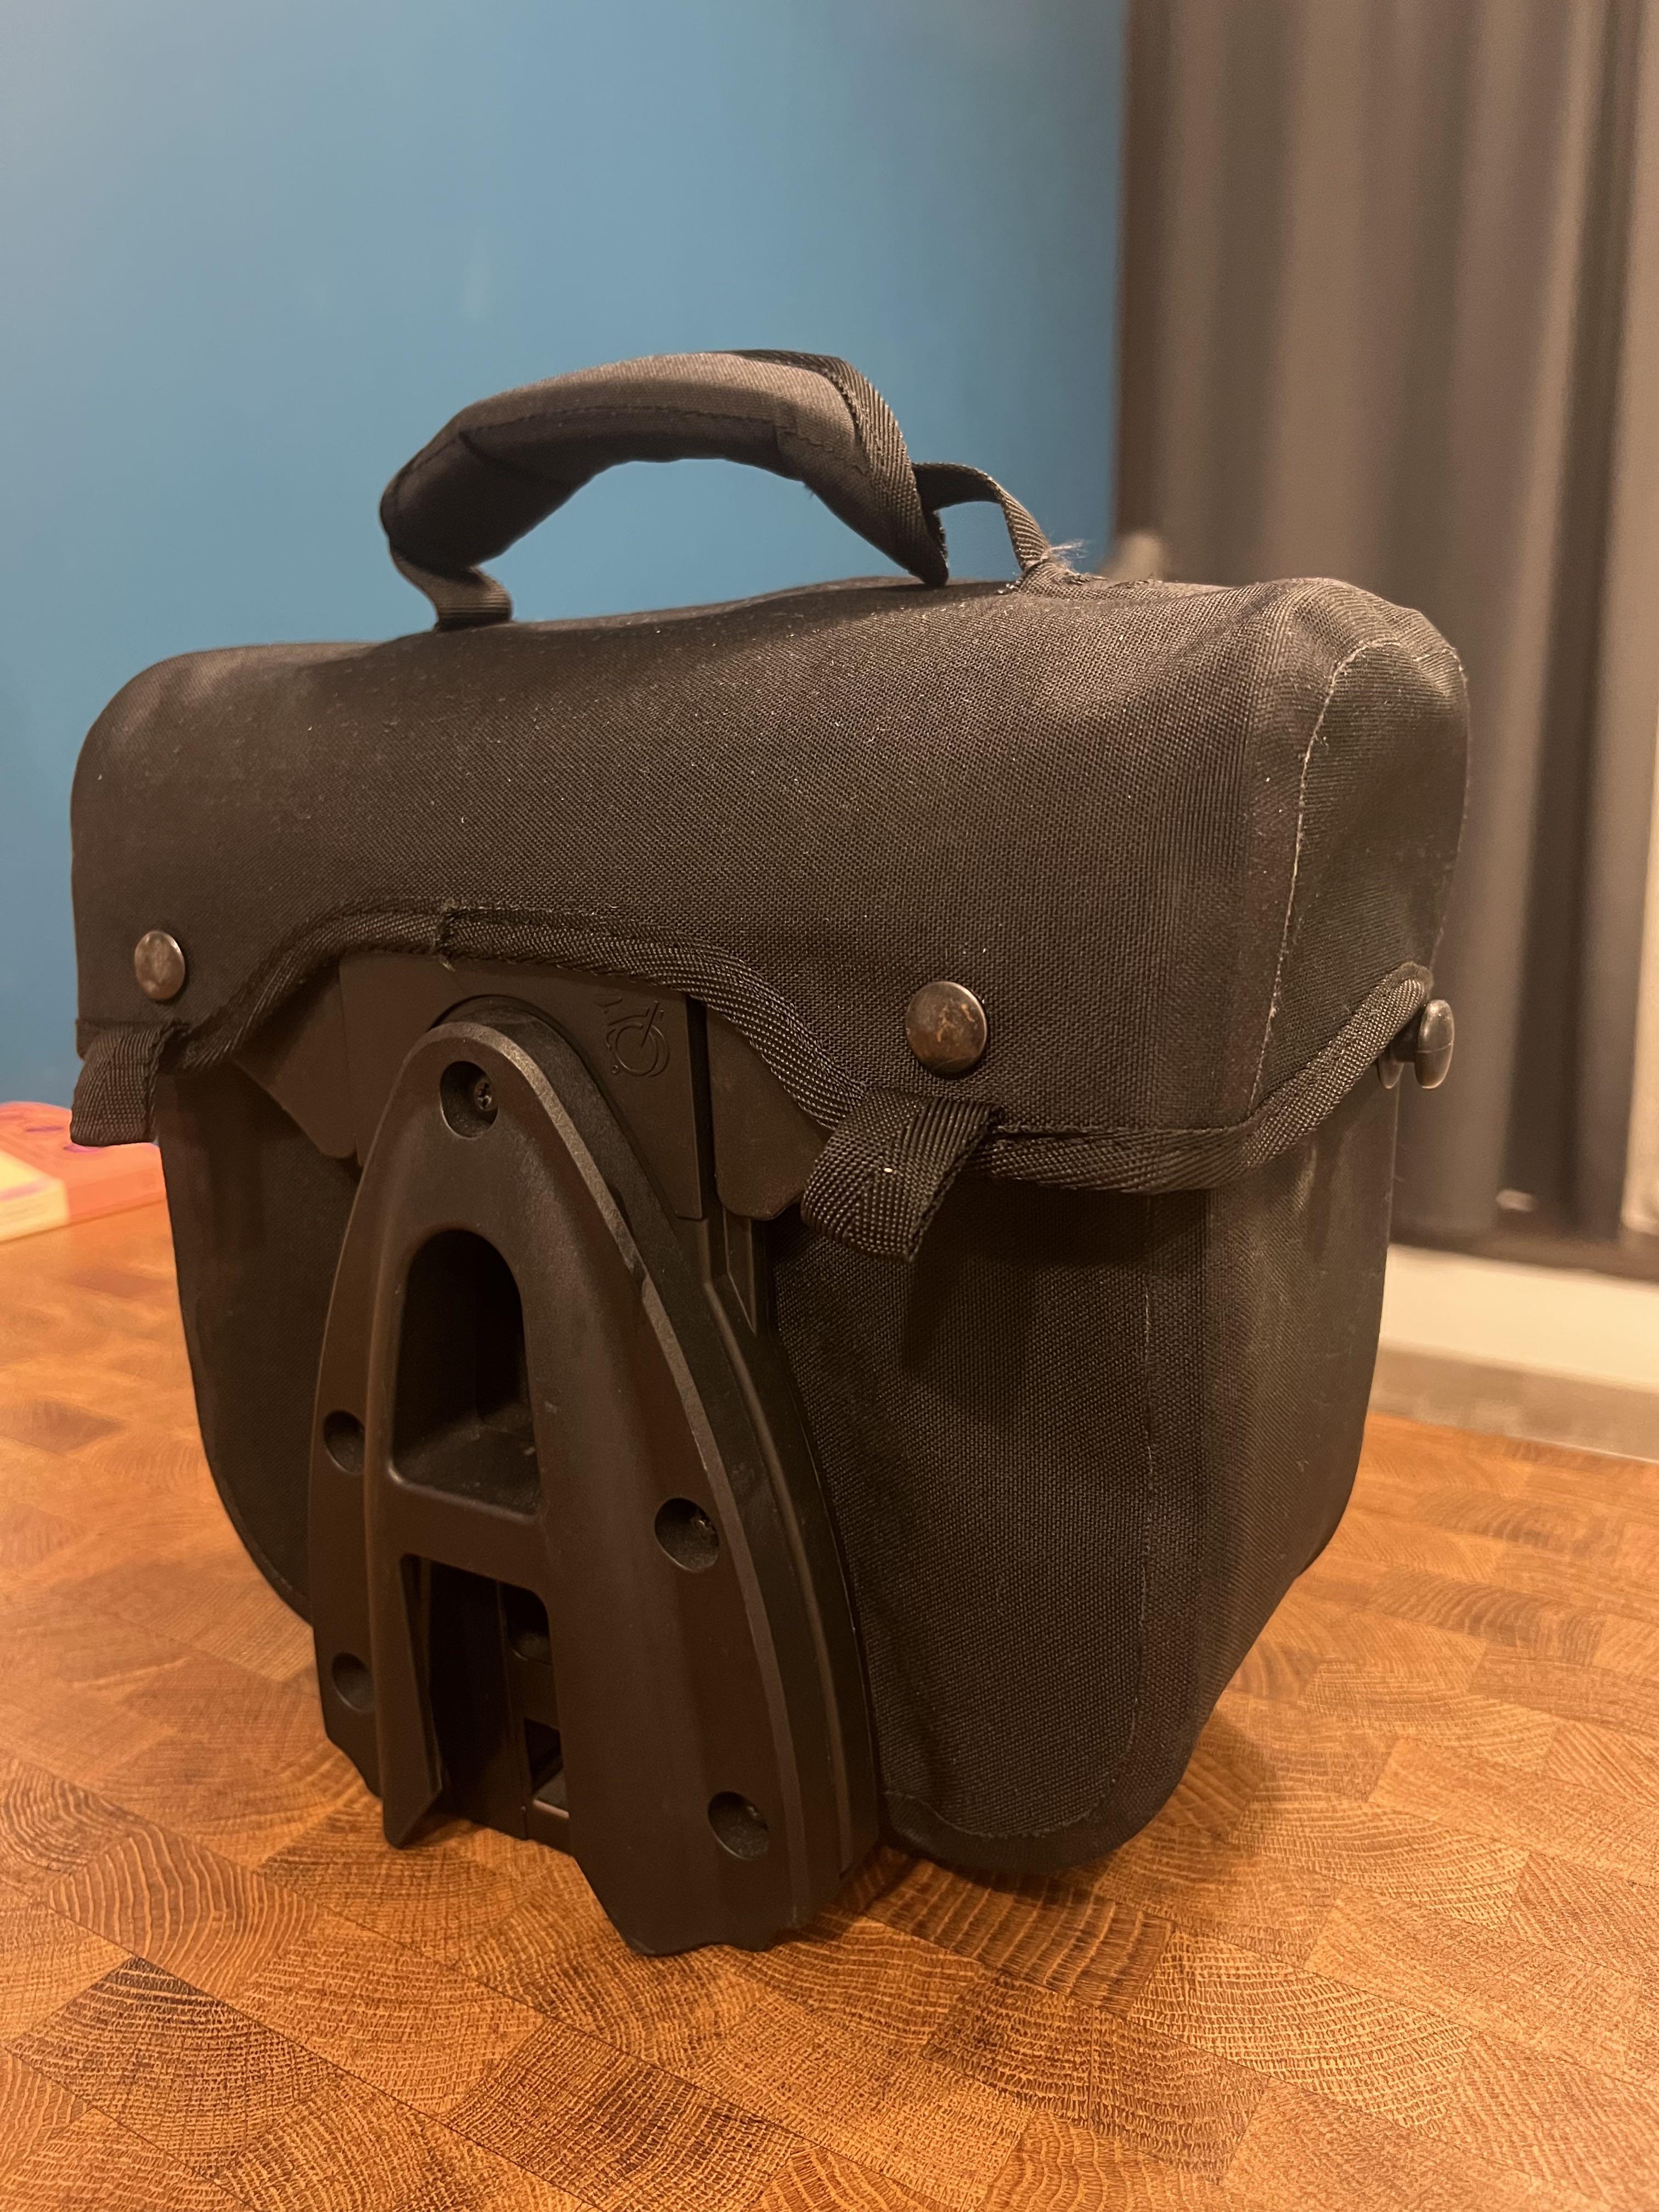 Brompton Mini O Bag, 運動產品, 單車及配件, 單車- Carousell